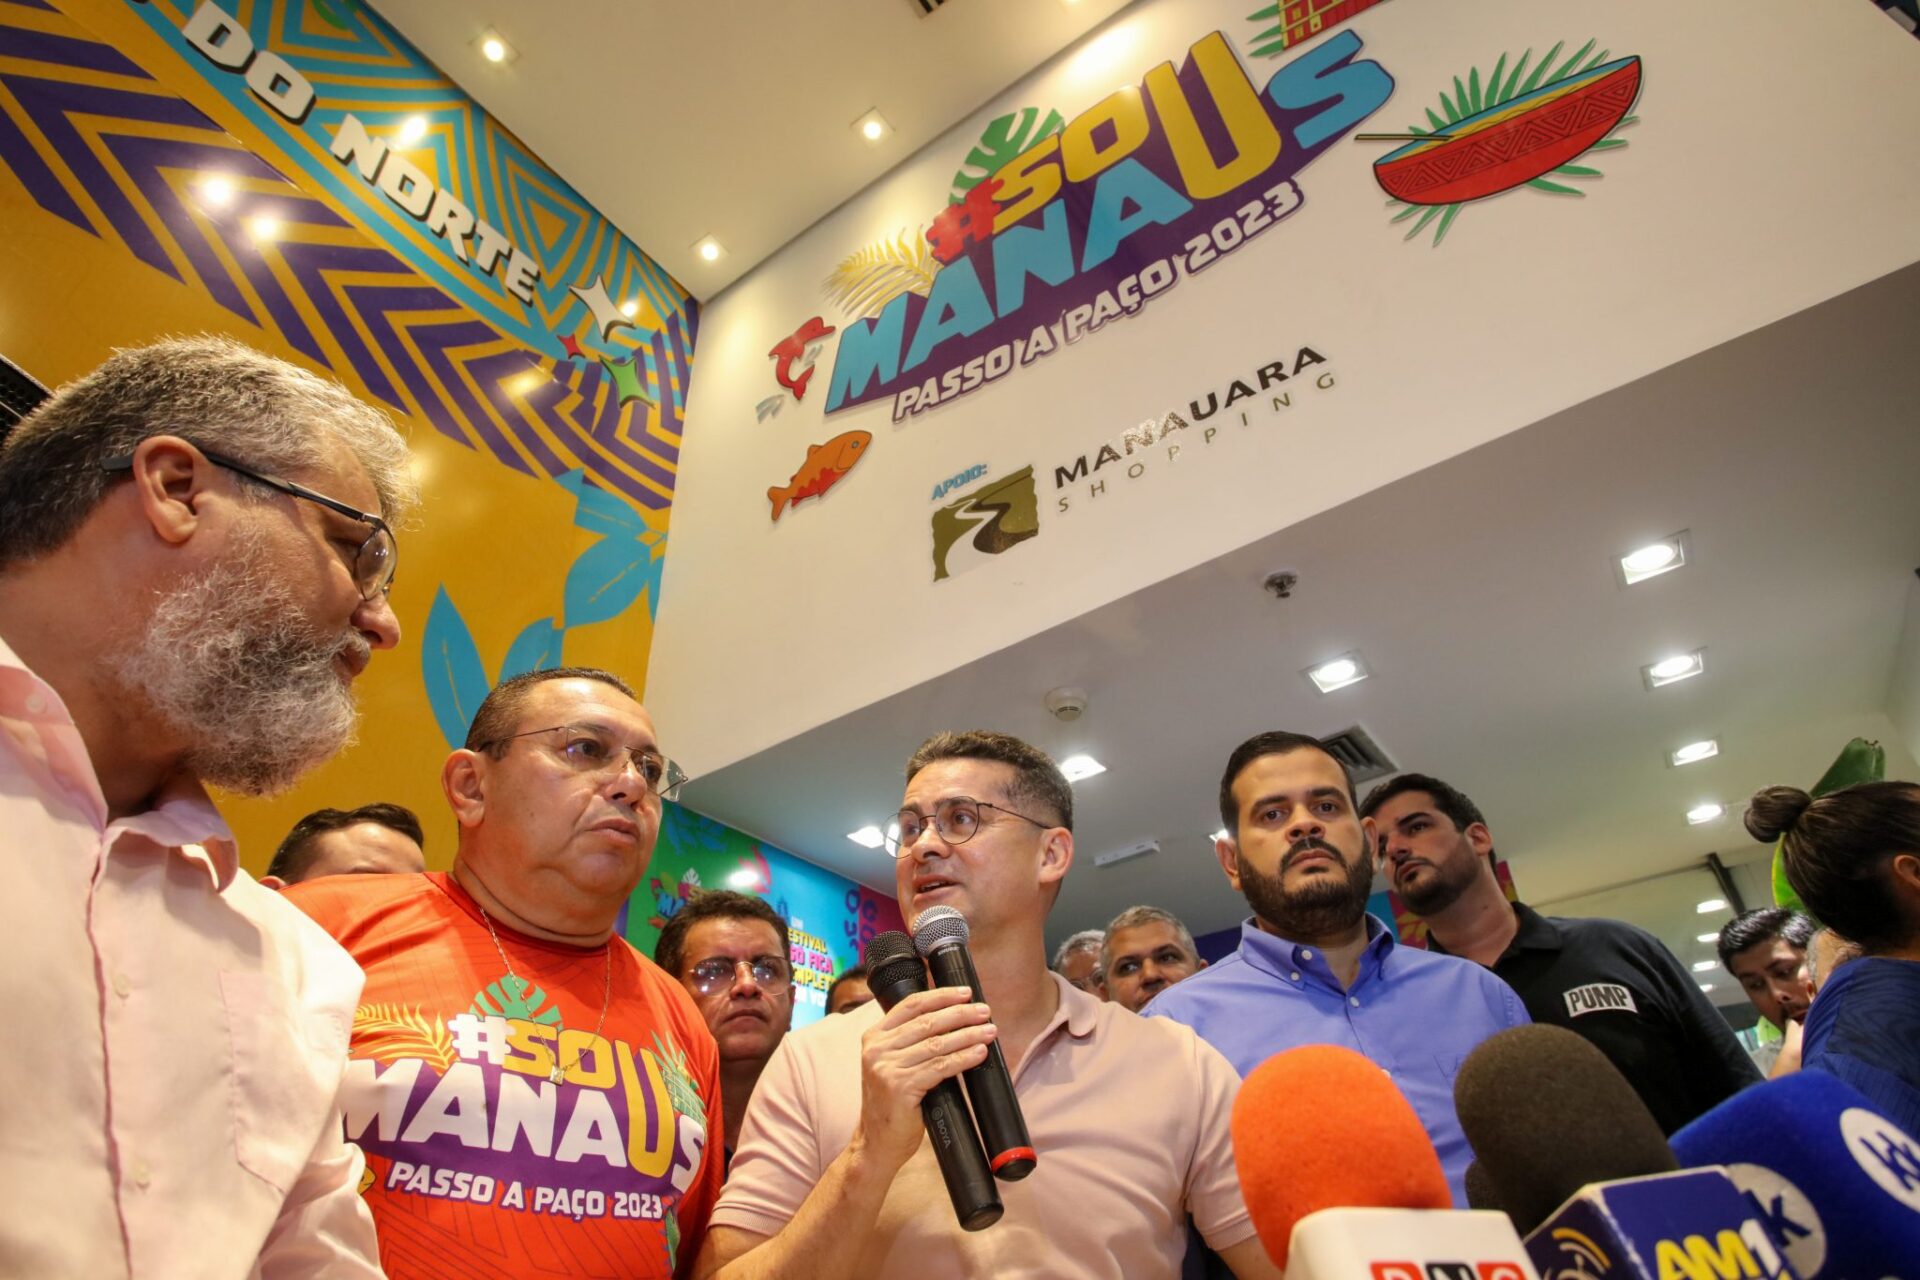 Prefeitura inaugura loja do festival ‘#SouManaus 2023’ no Manauara Shopping